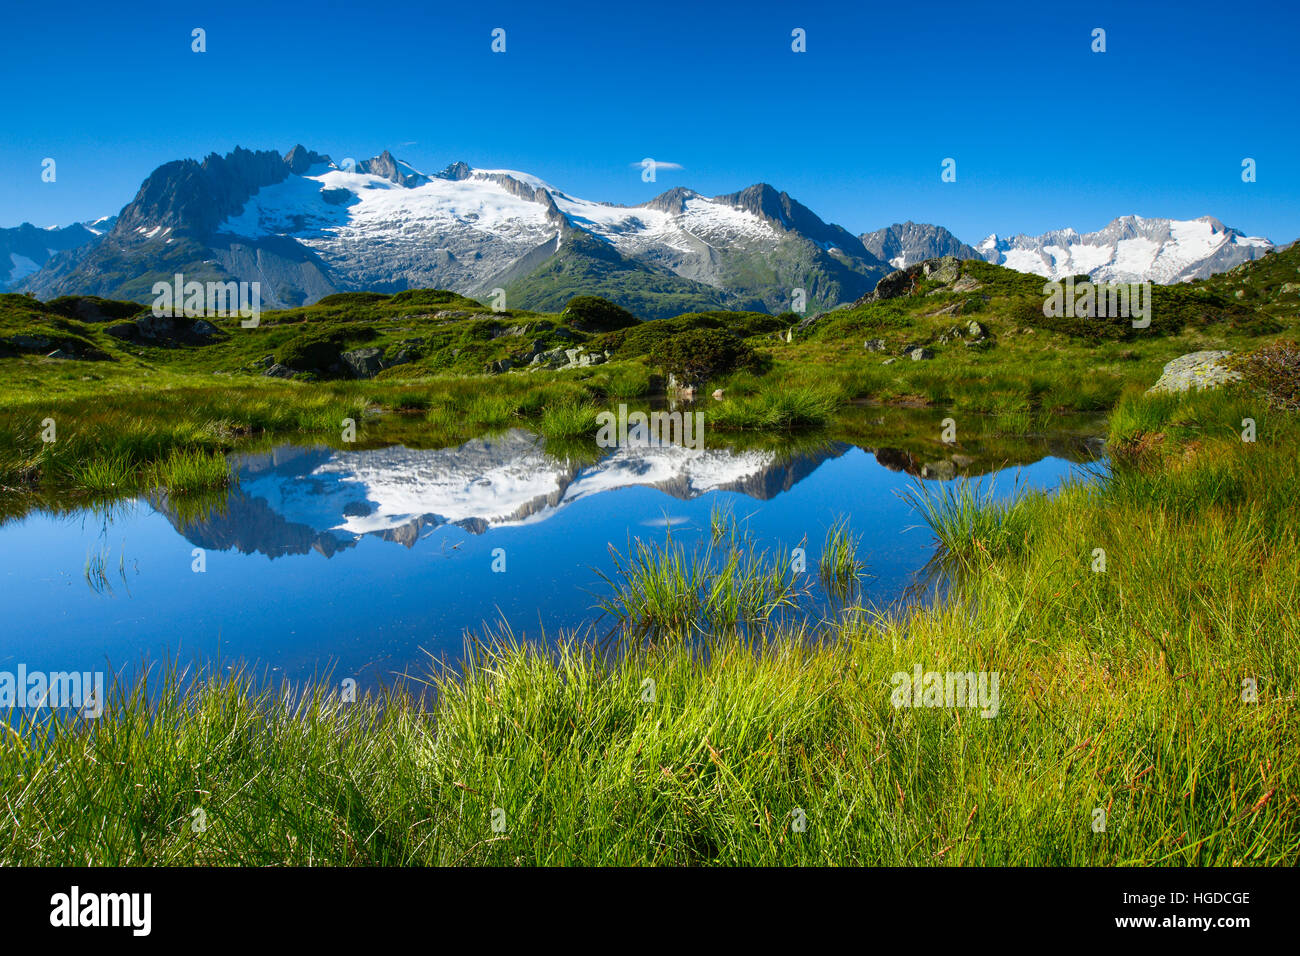 Fusshörner and Wannenhörner mountains in Valais, Switzerland Stock Photo